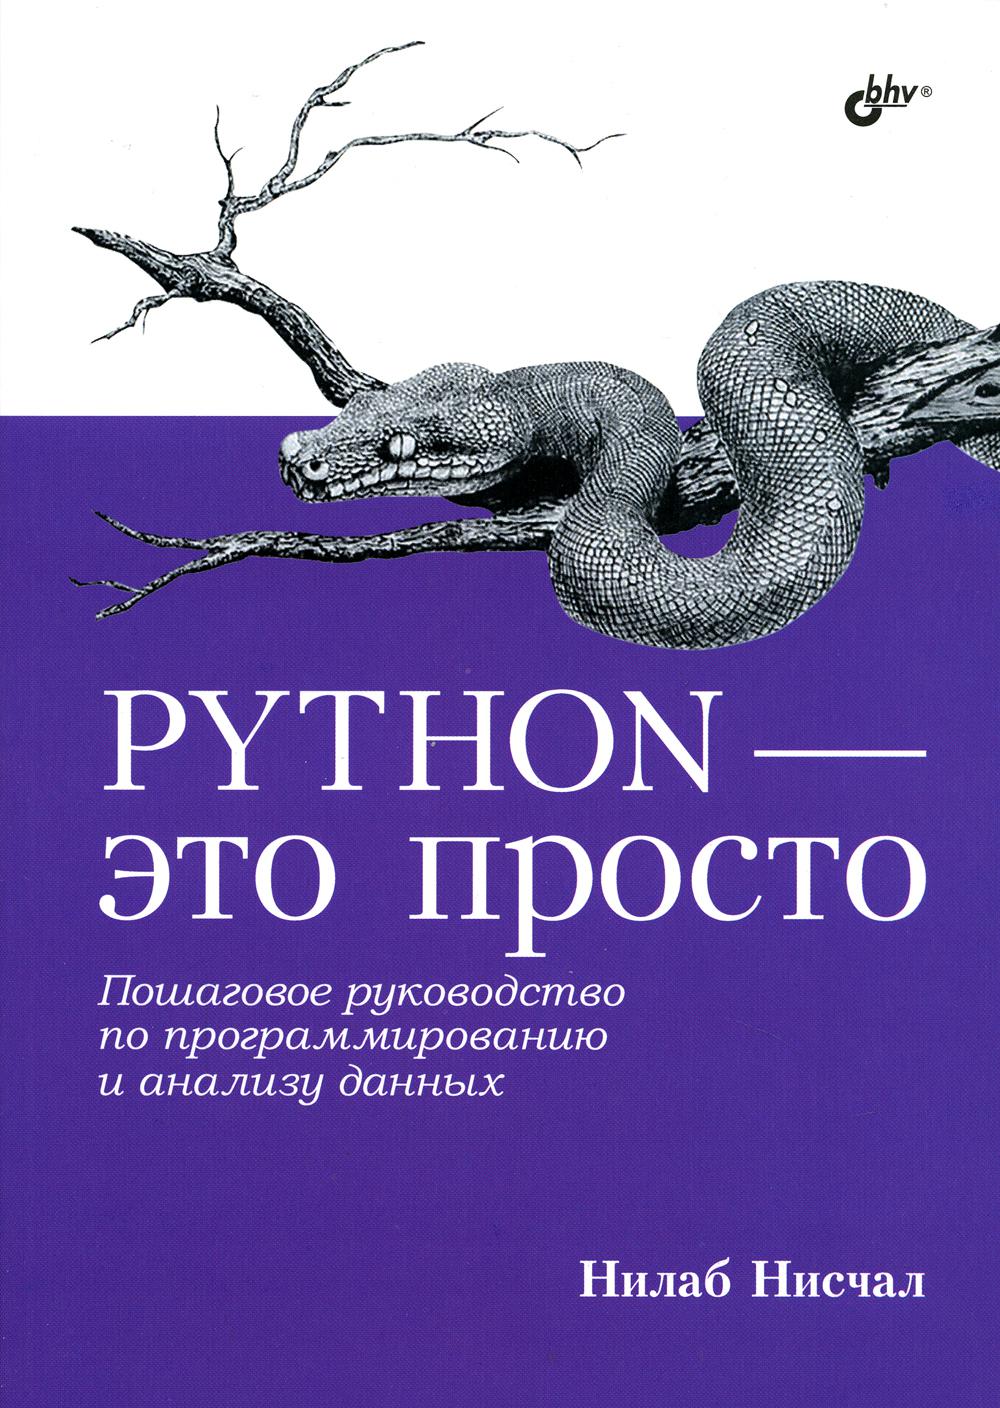 Python -  .       